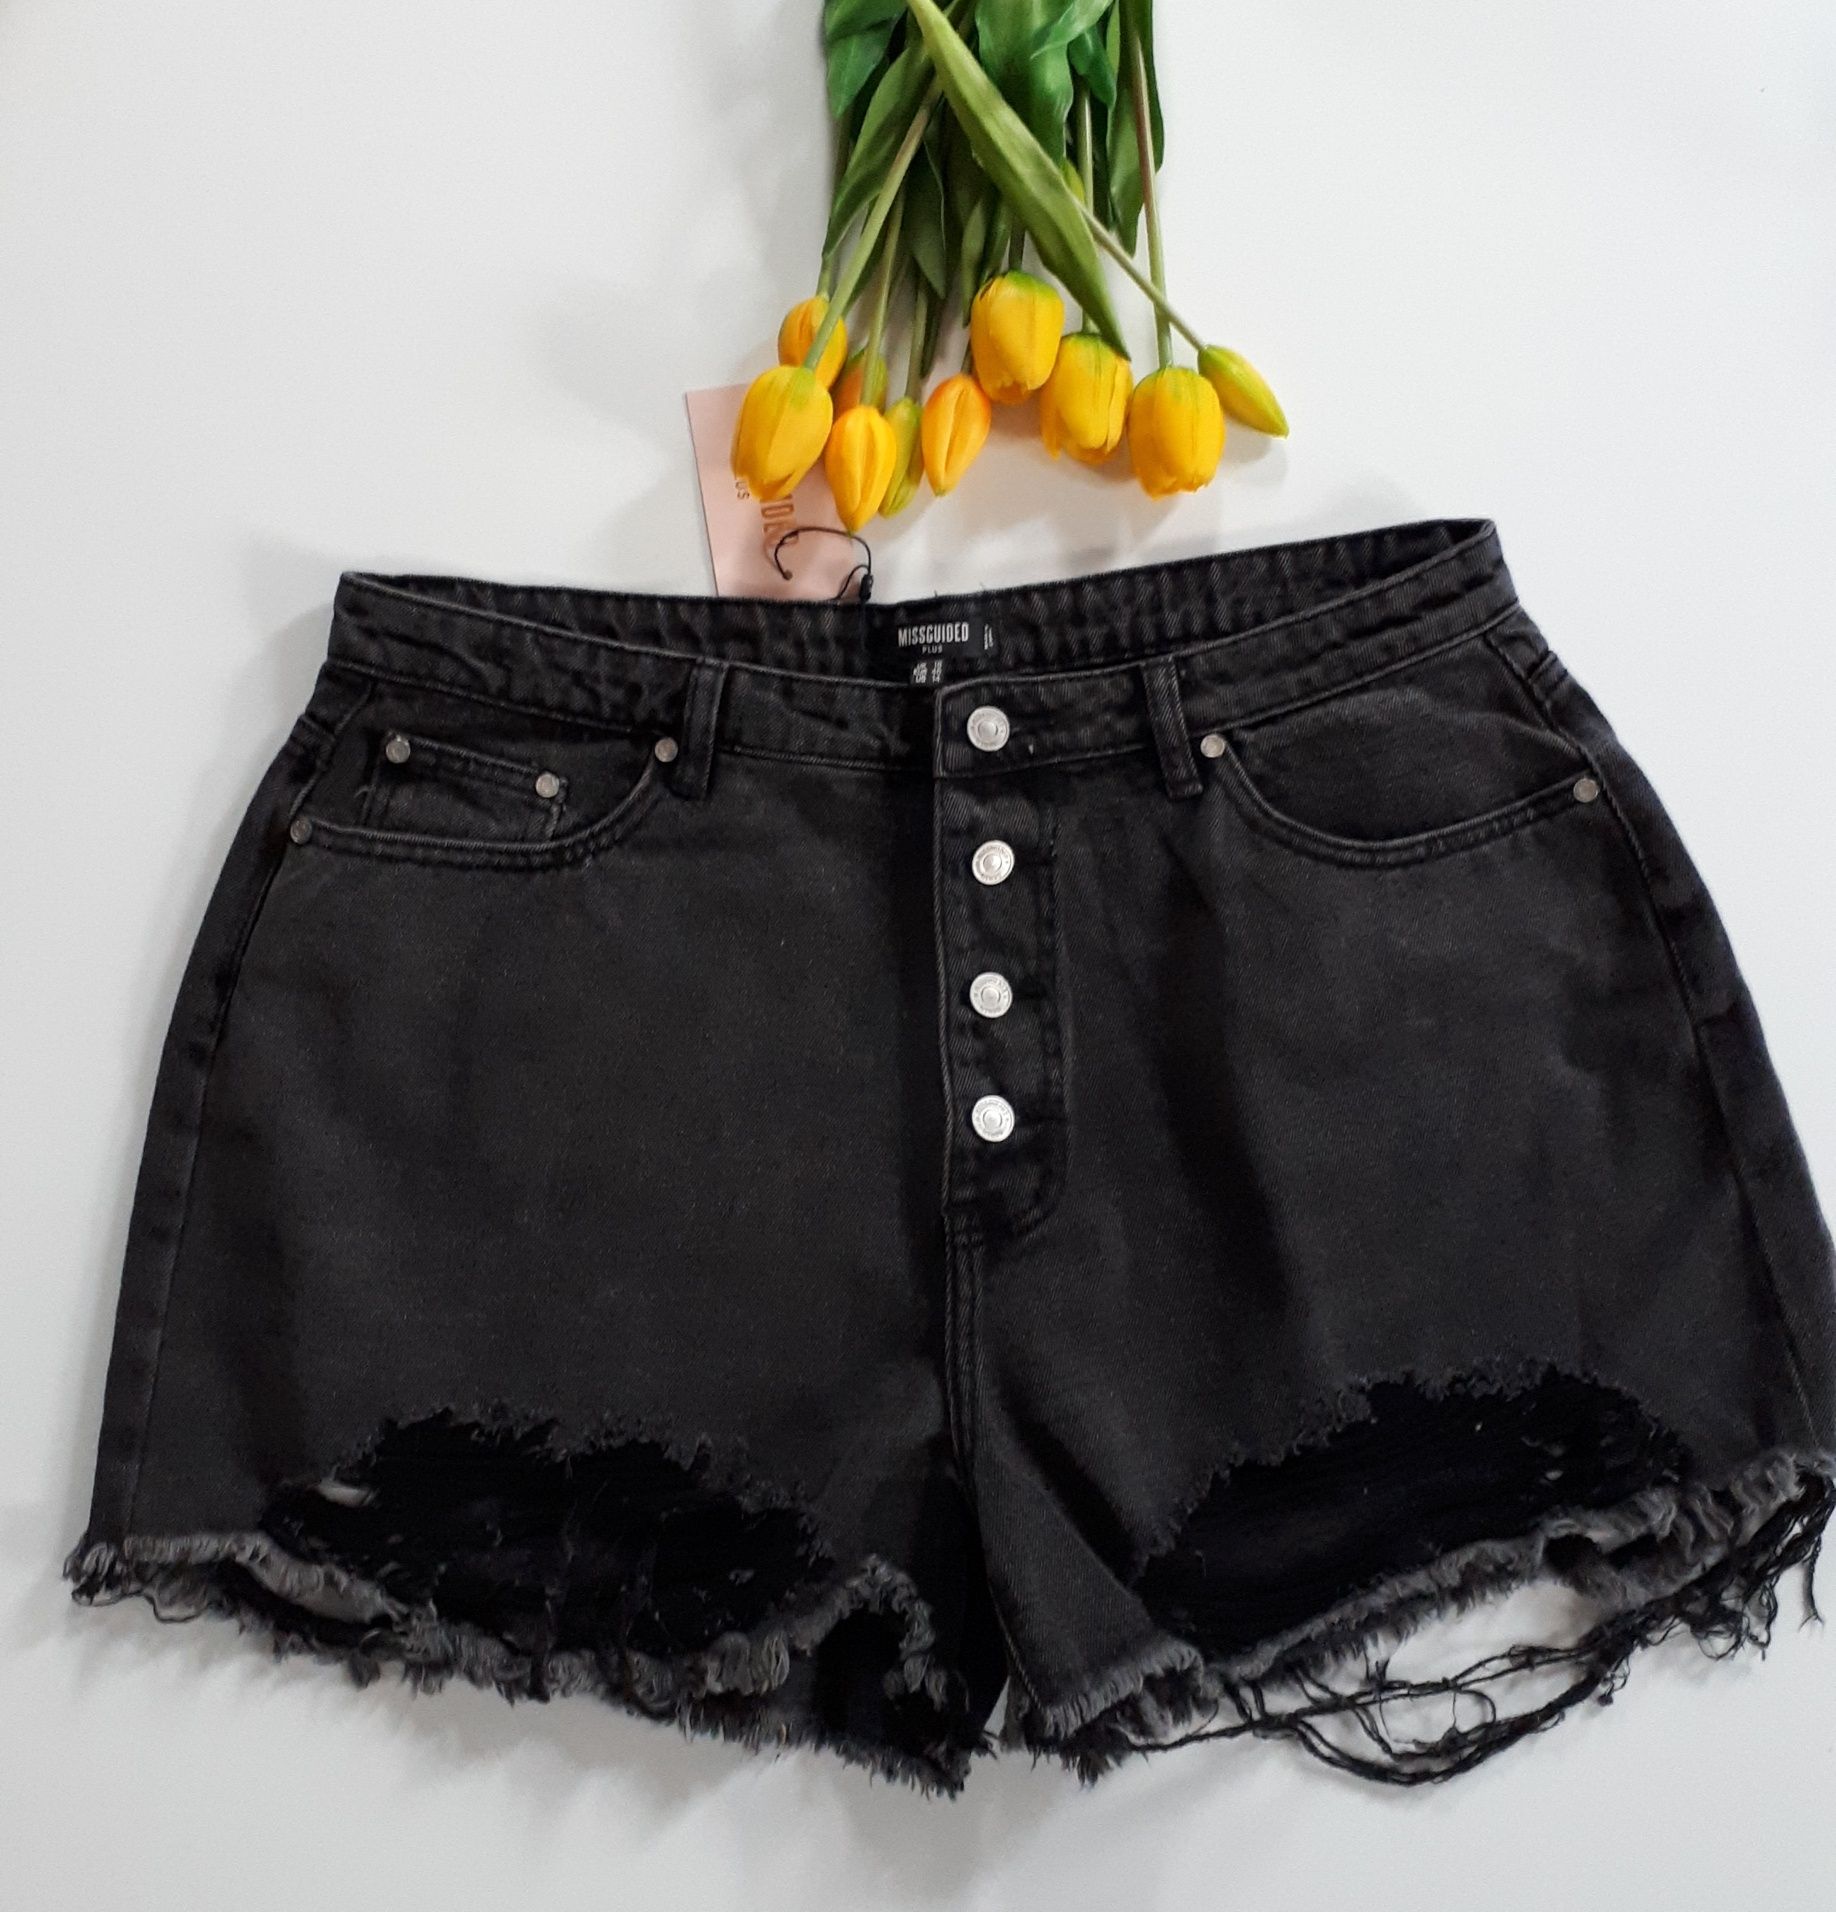 Spodenki szorty damskie jeansowe czarne z dziurami 46